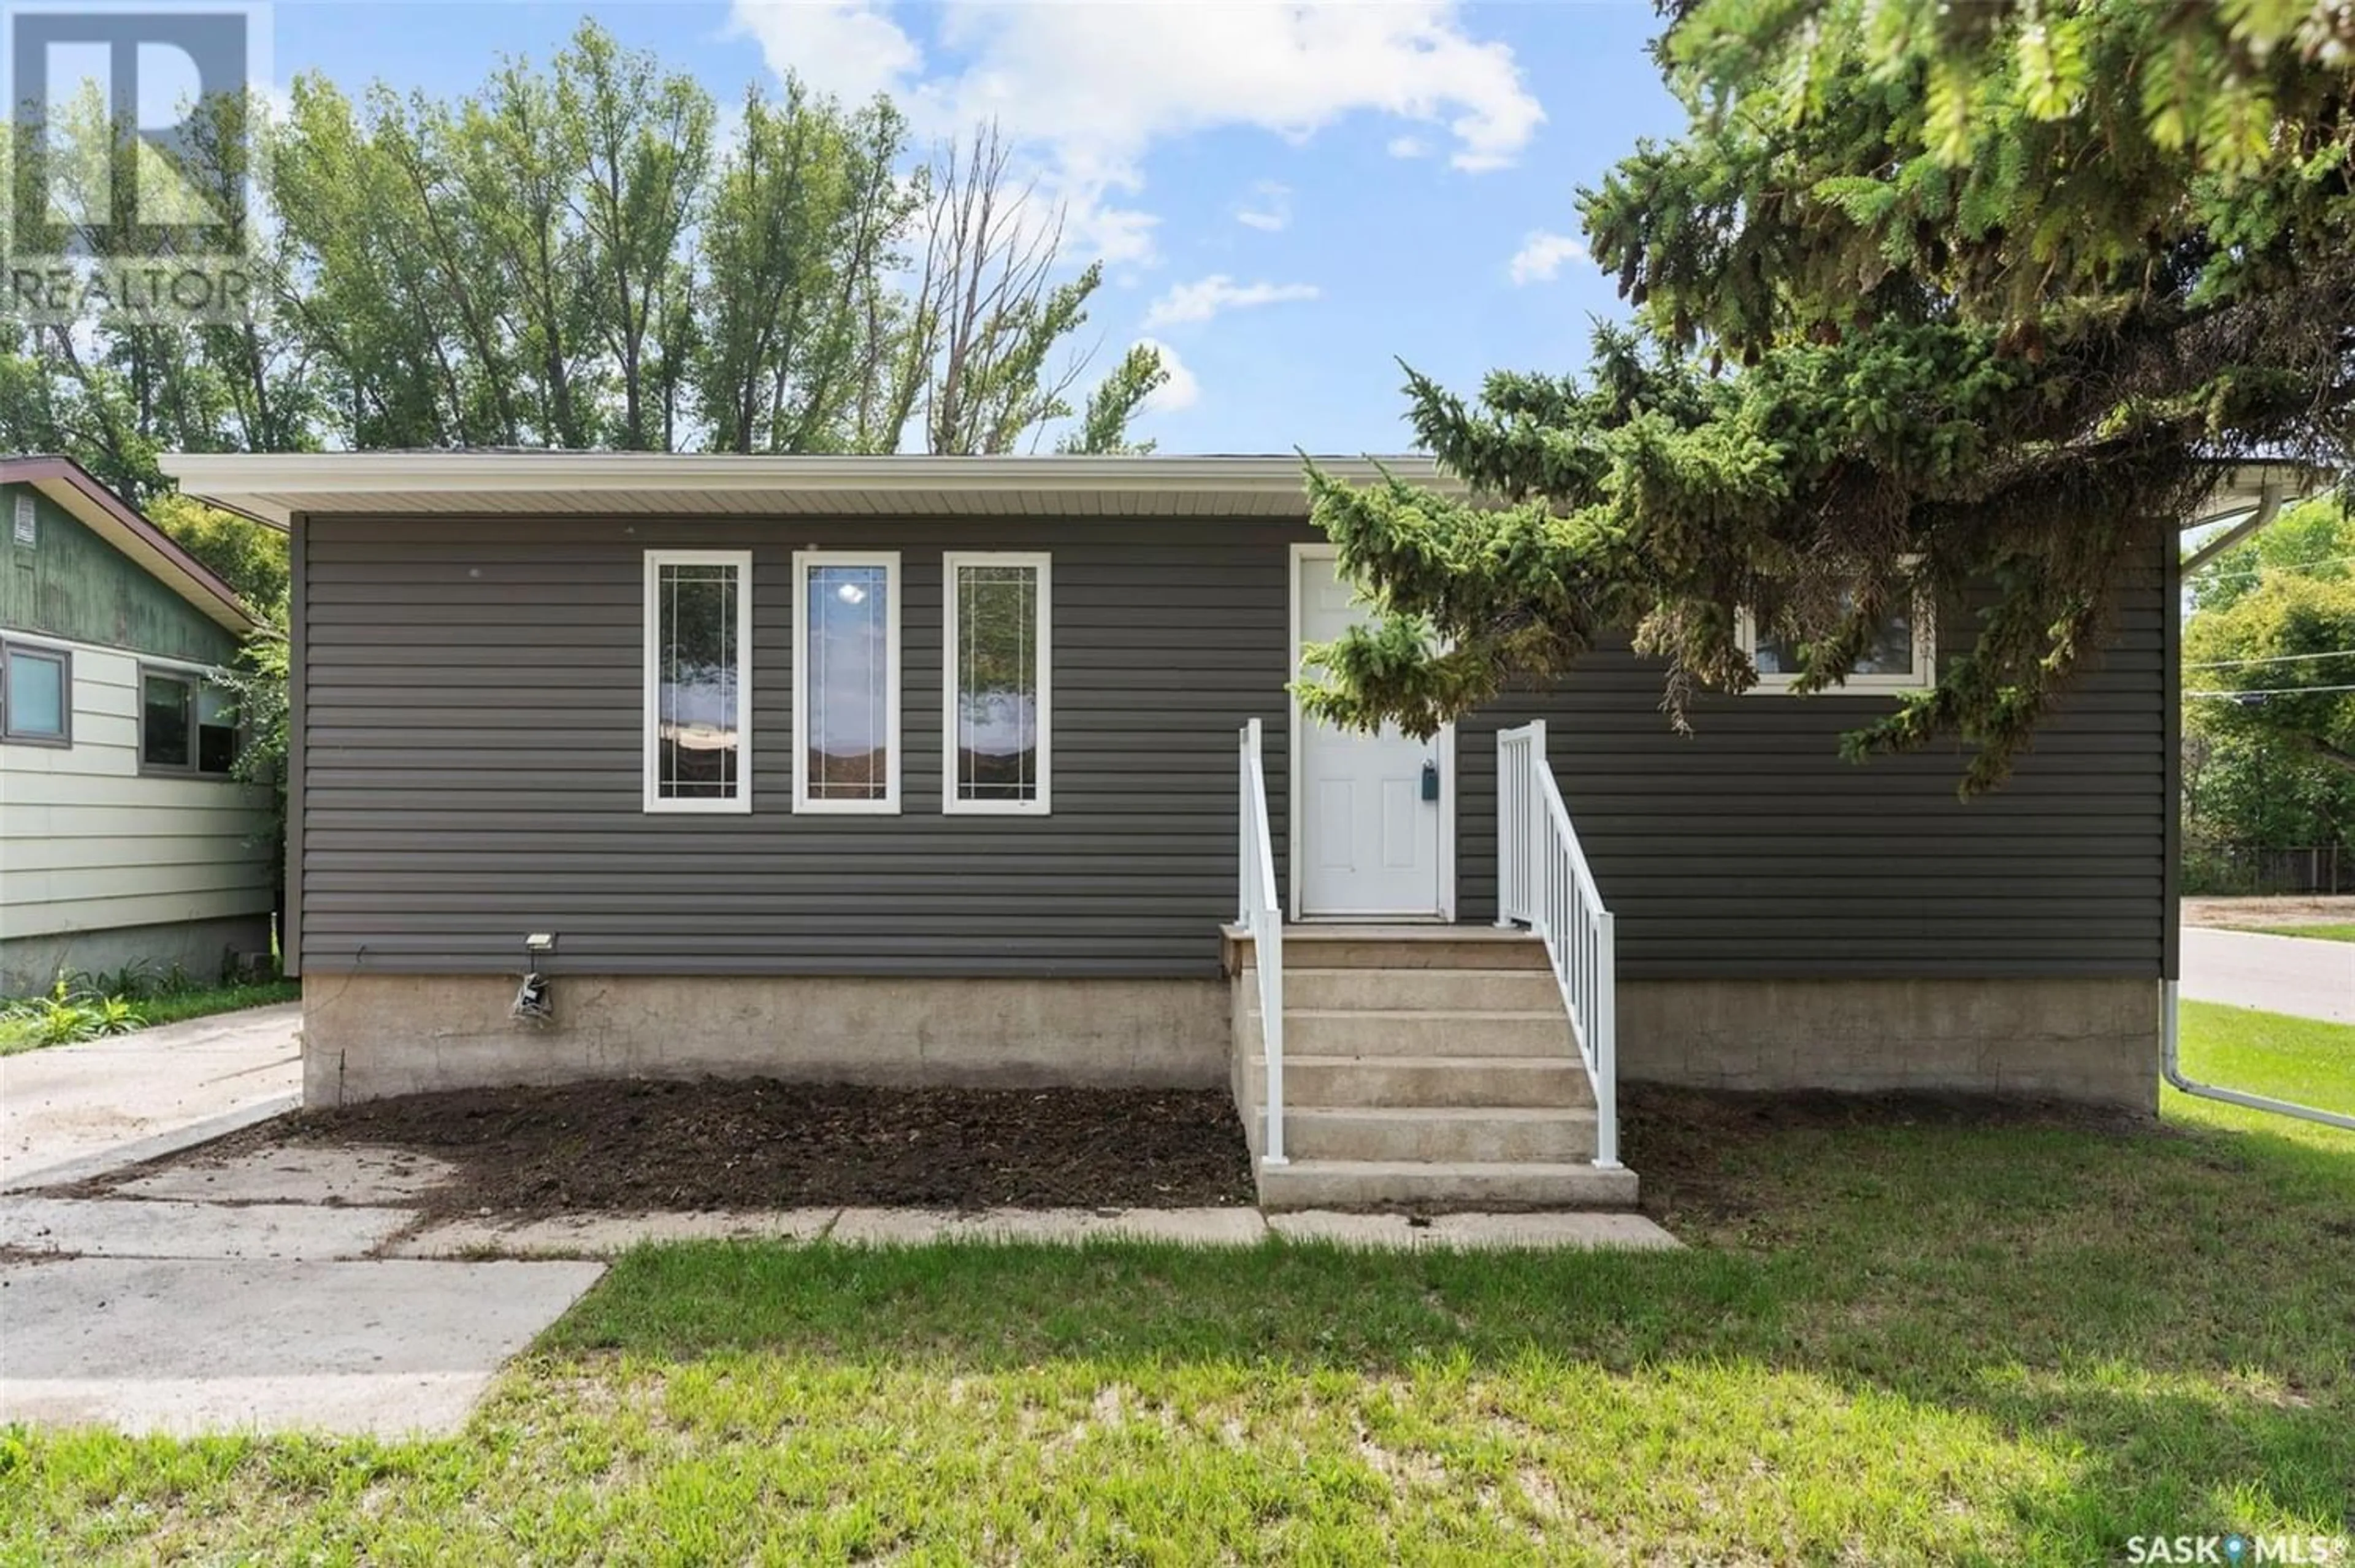 Home with vinyl exterior material for 201 6th AVENUE E, Watrous Saskatchewan S0K4T0